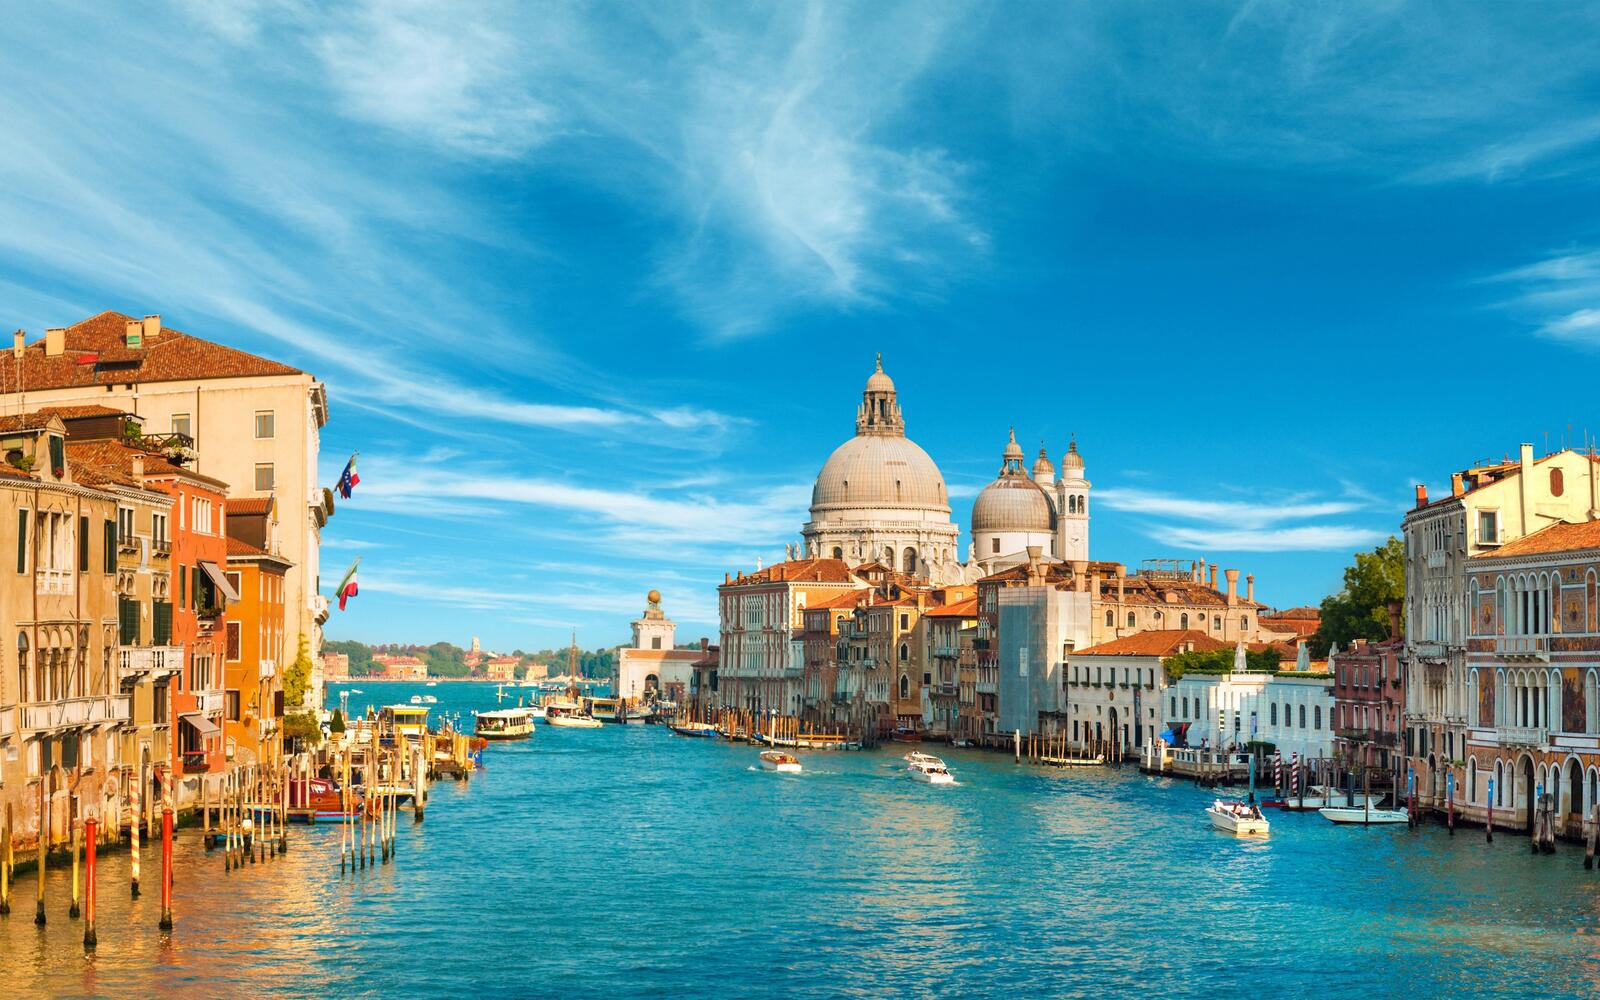 Бесплатное фото Гранд-канал в Венеции с красивой старинной архитектурой